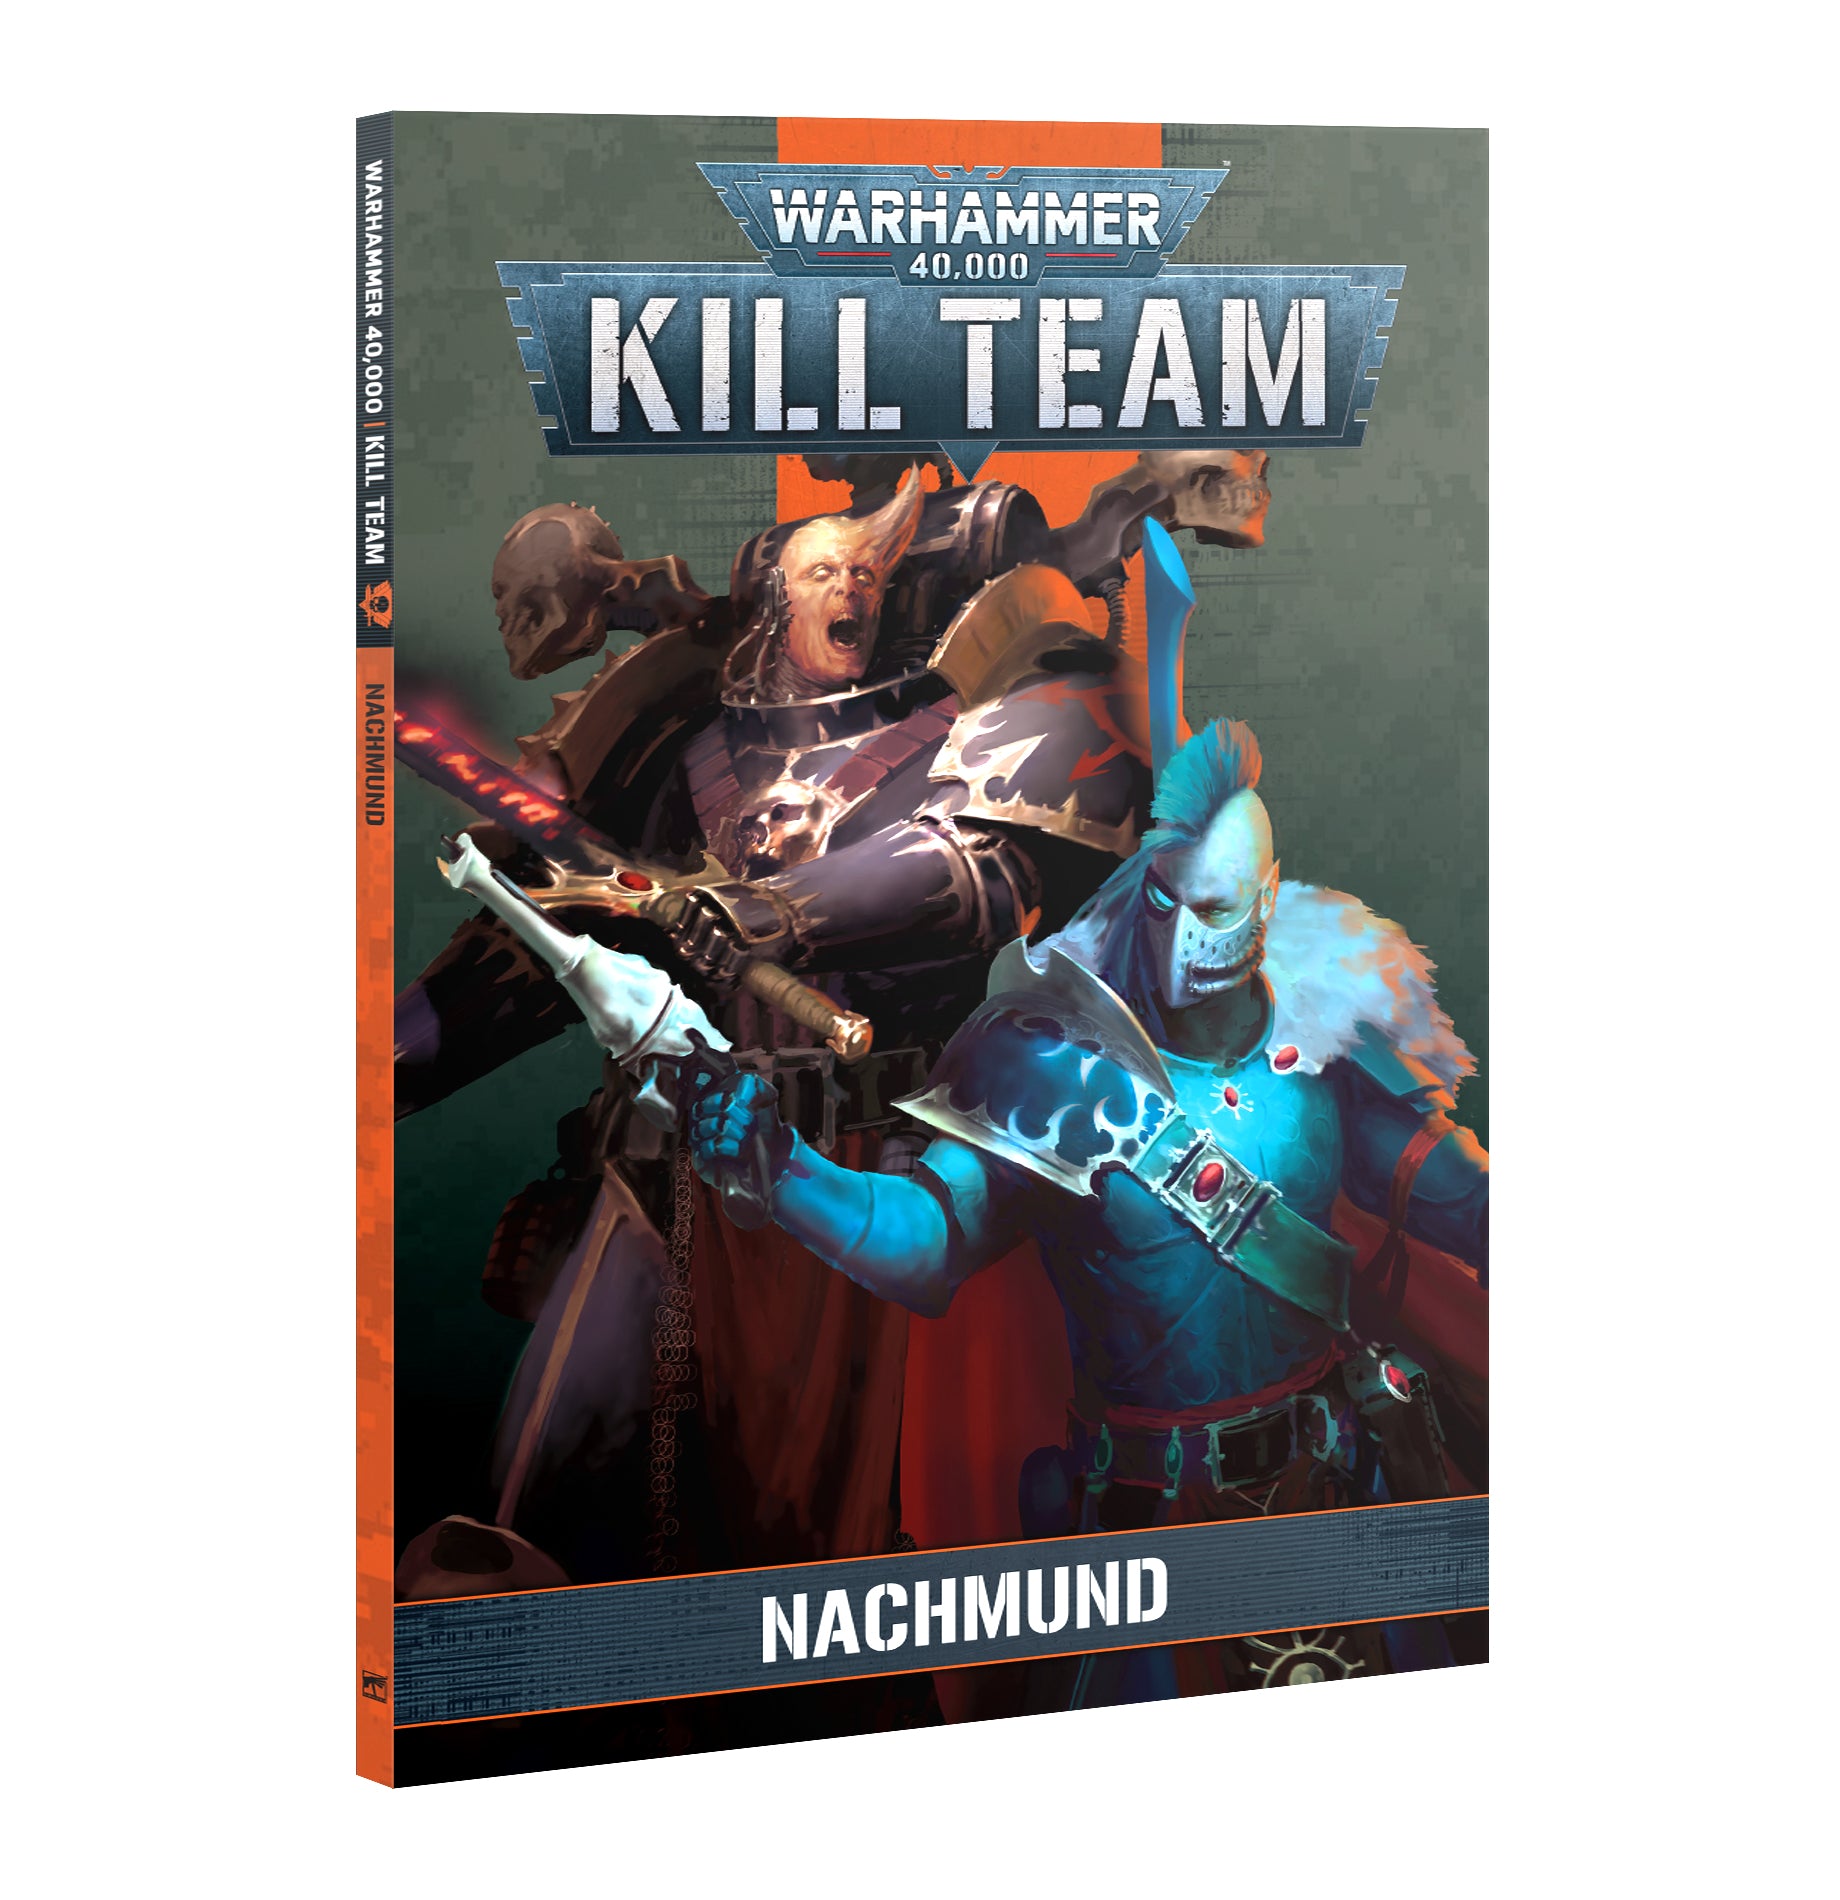 Kill Team - Nachmund (102-67)